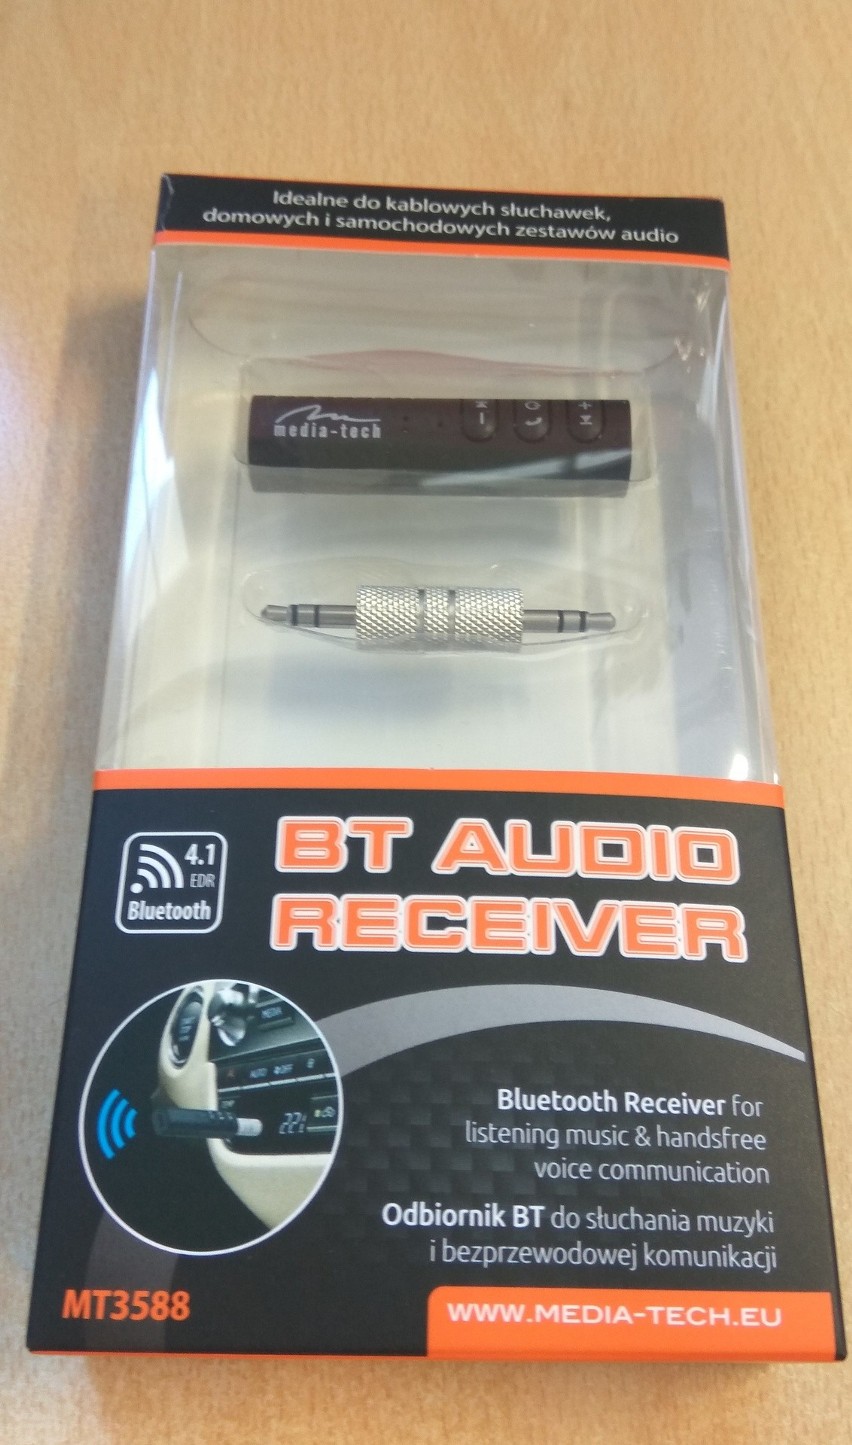 Odbiornik bluetooth Media-Tech BT Audio Reciver MT3588: zmieni każde słuchawki w bezprzewodowe - [NASZ TEST, FILM] - Laboratorium, odc. 15 